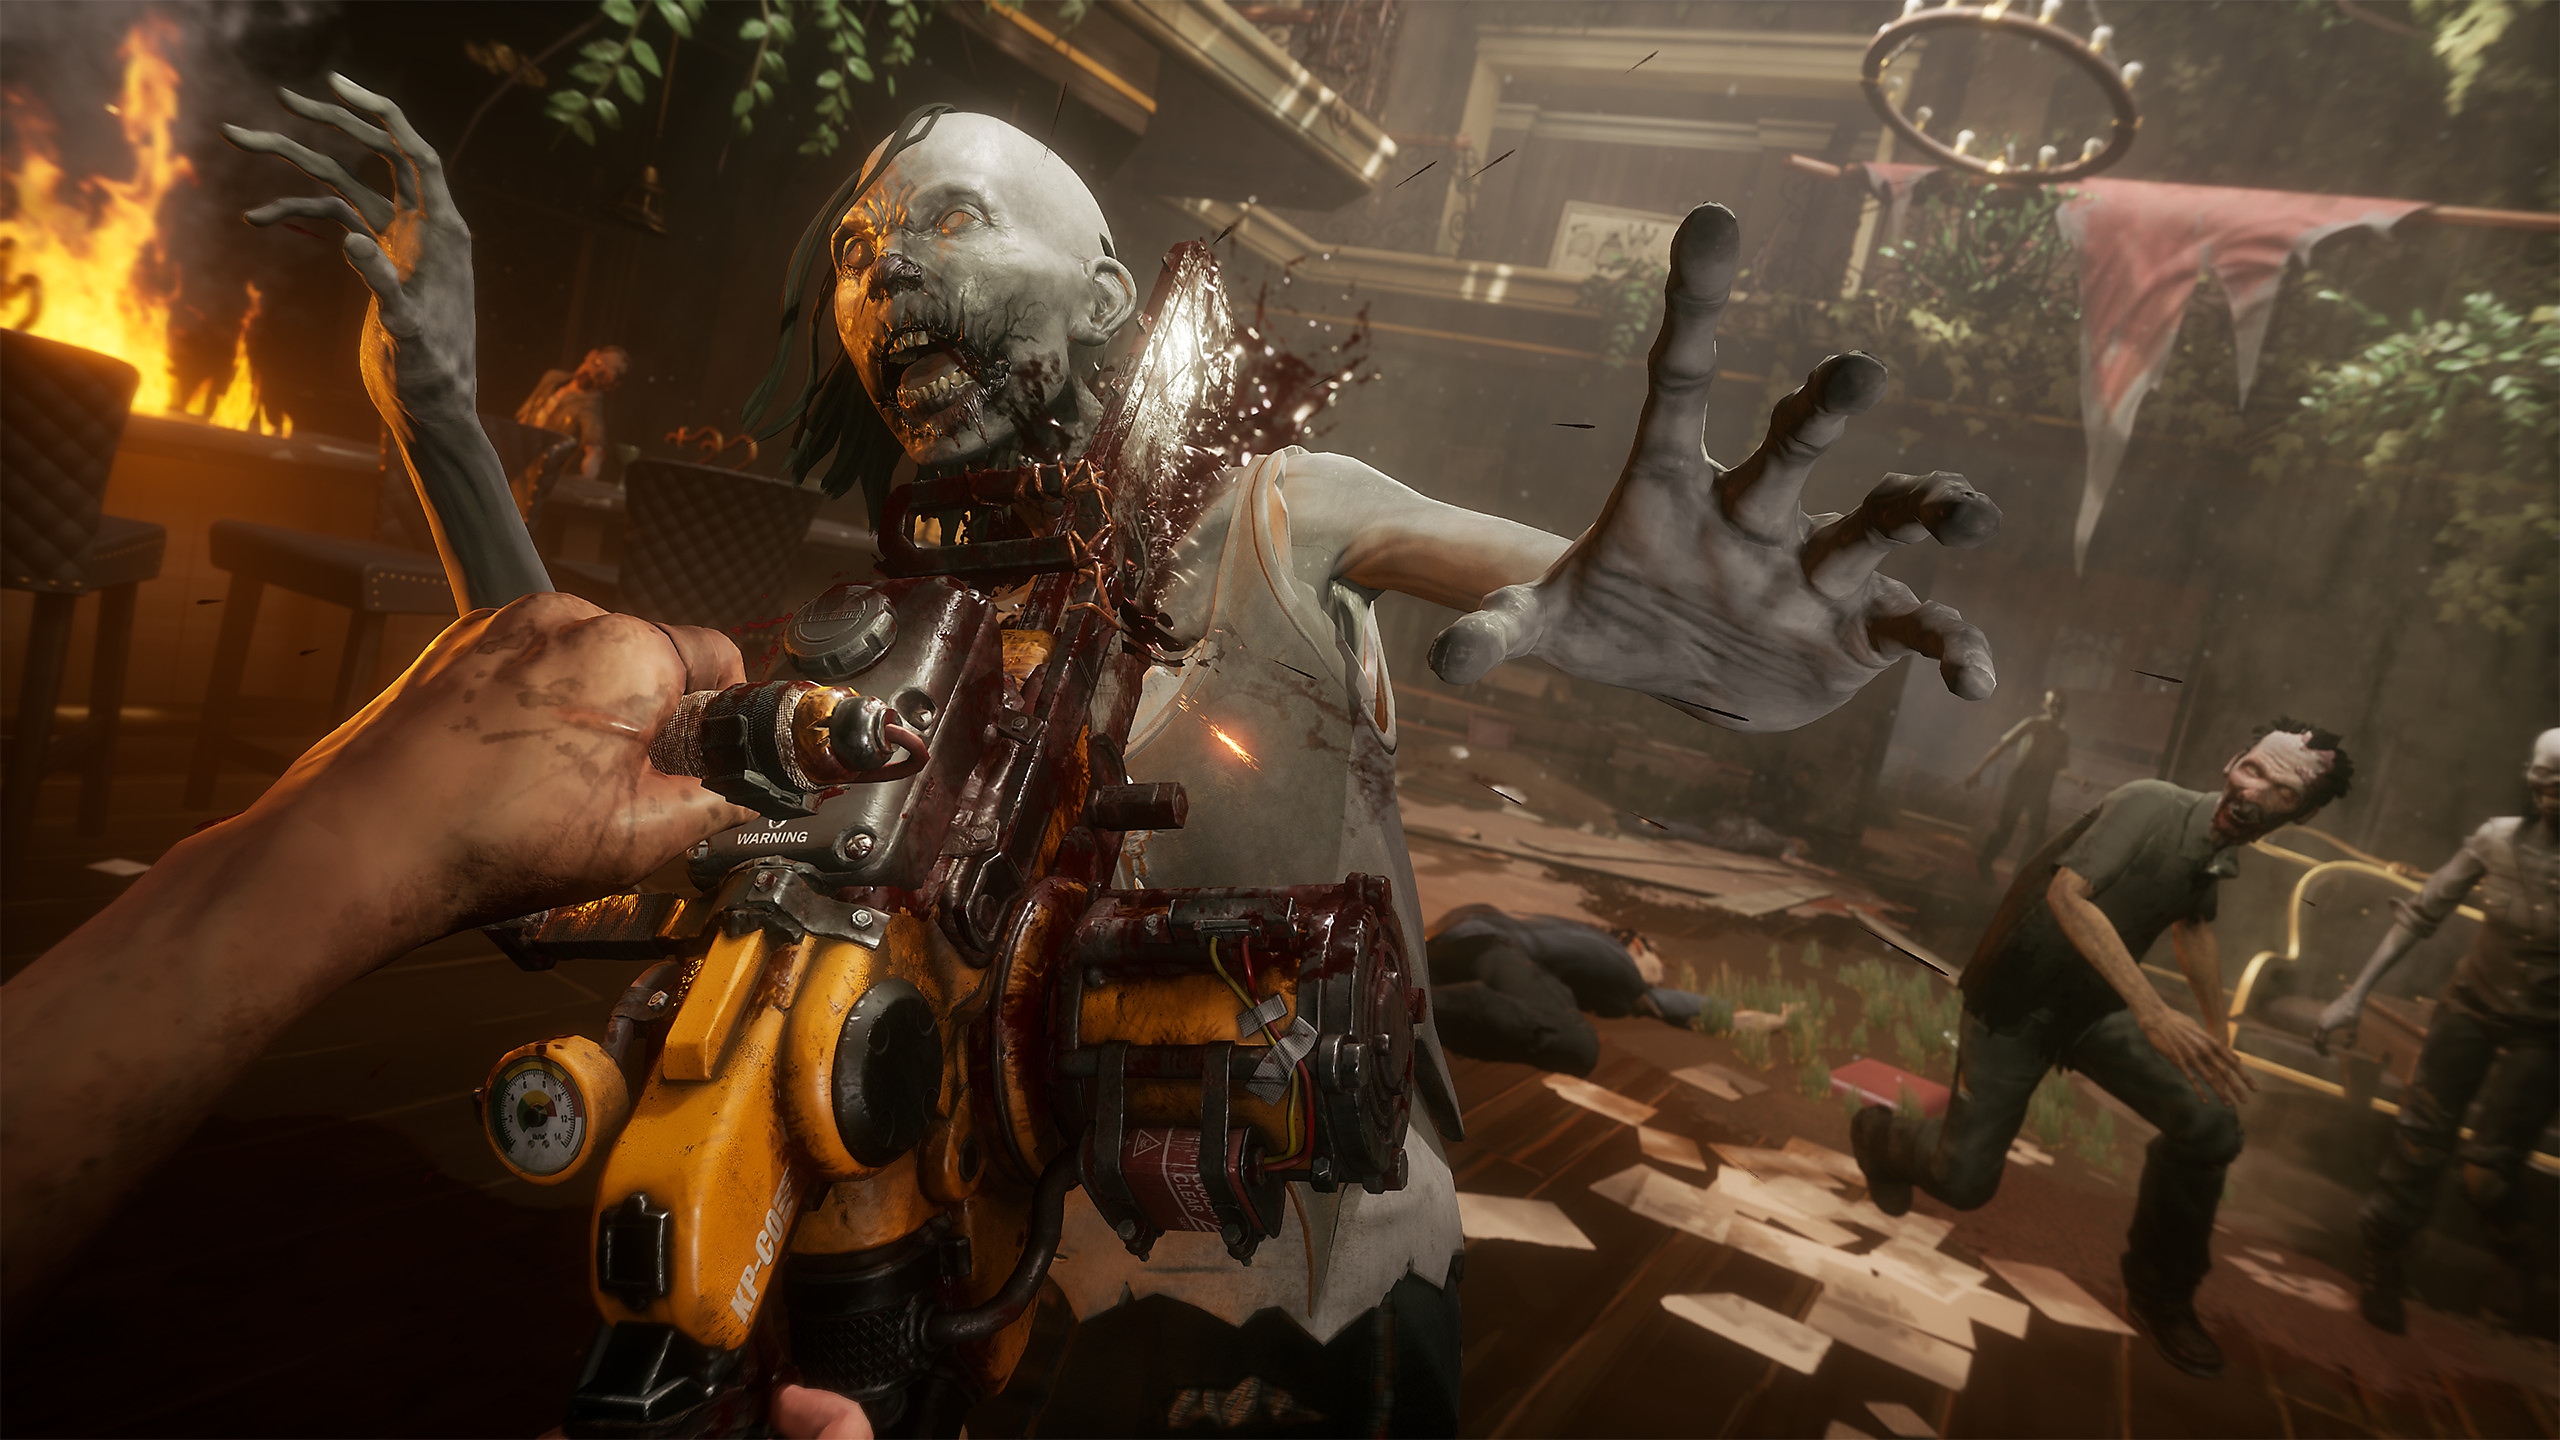 TWDSS Chapitre 2 : Retribution - Capture d'écran montrant un zombie tué par une tronçonneuse